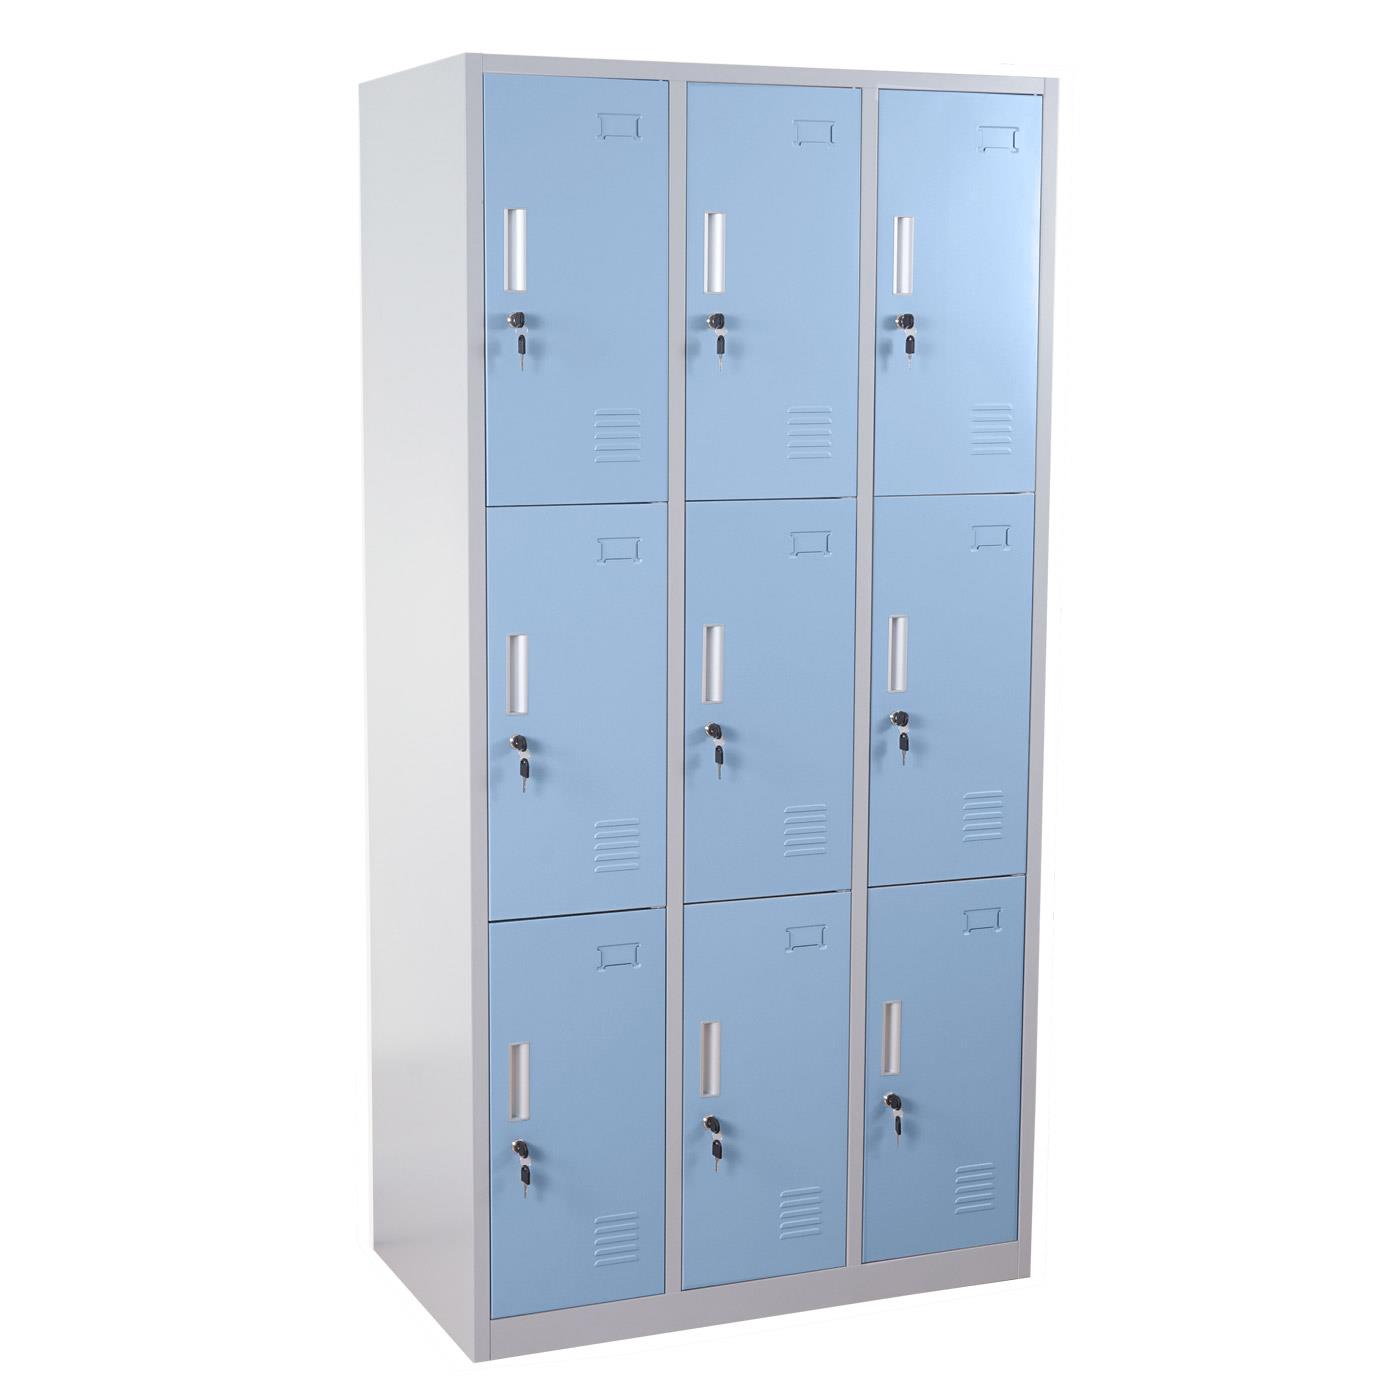 Schließfachschrank EVELIN, 9 abschließbare Fächer, 180x90x50 cm, Farbe Blau